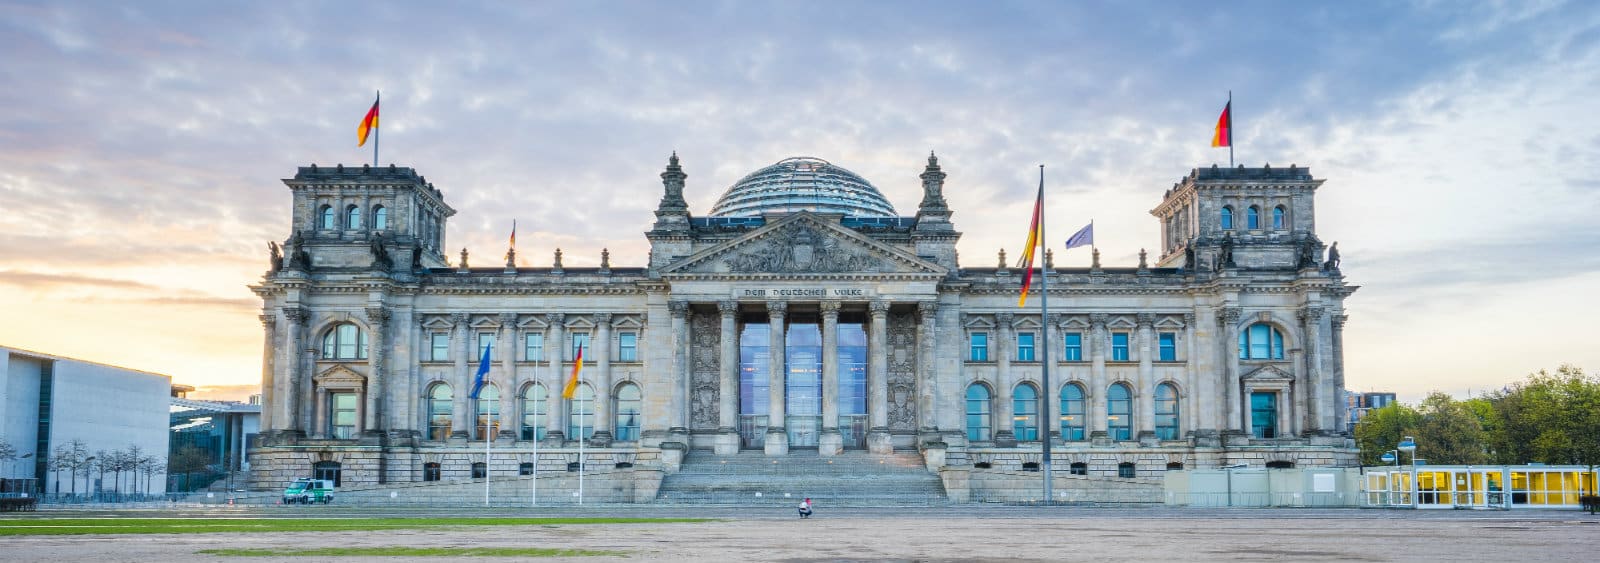 Qué ver en Berlín - Reichstag